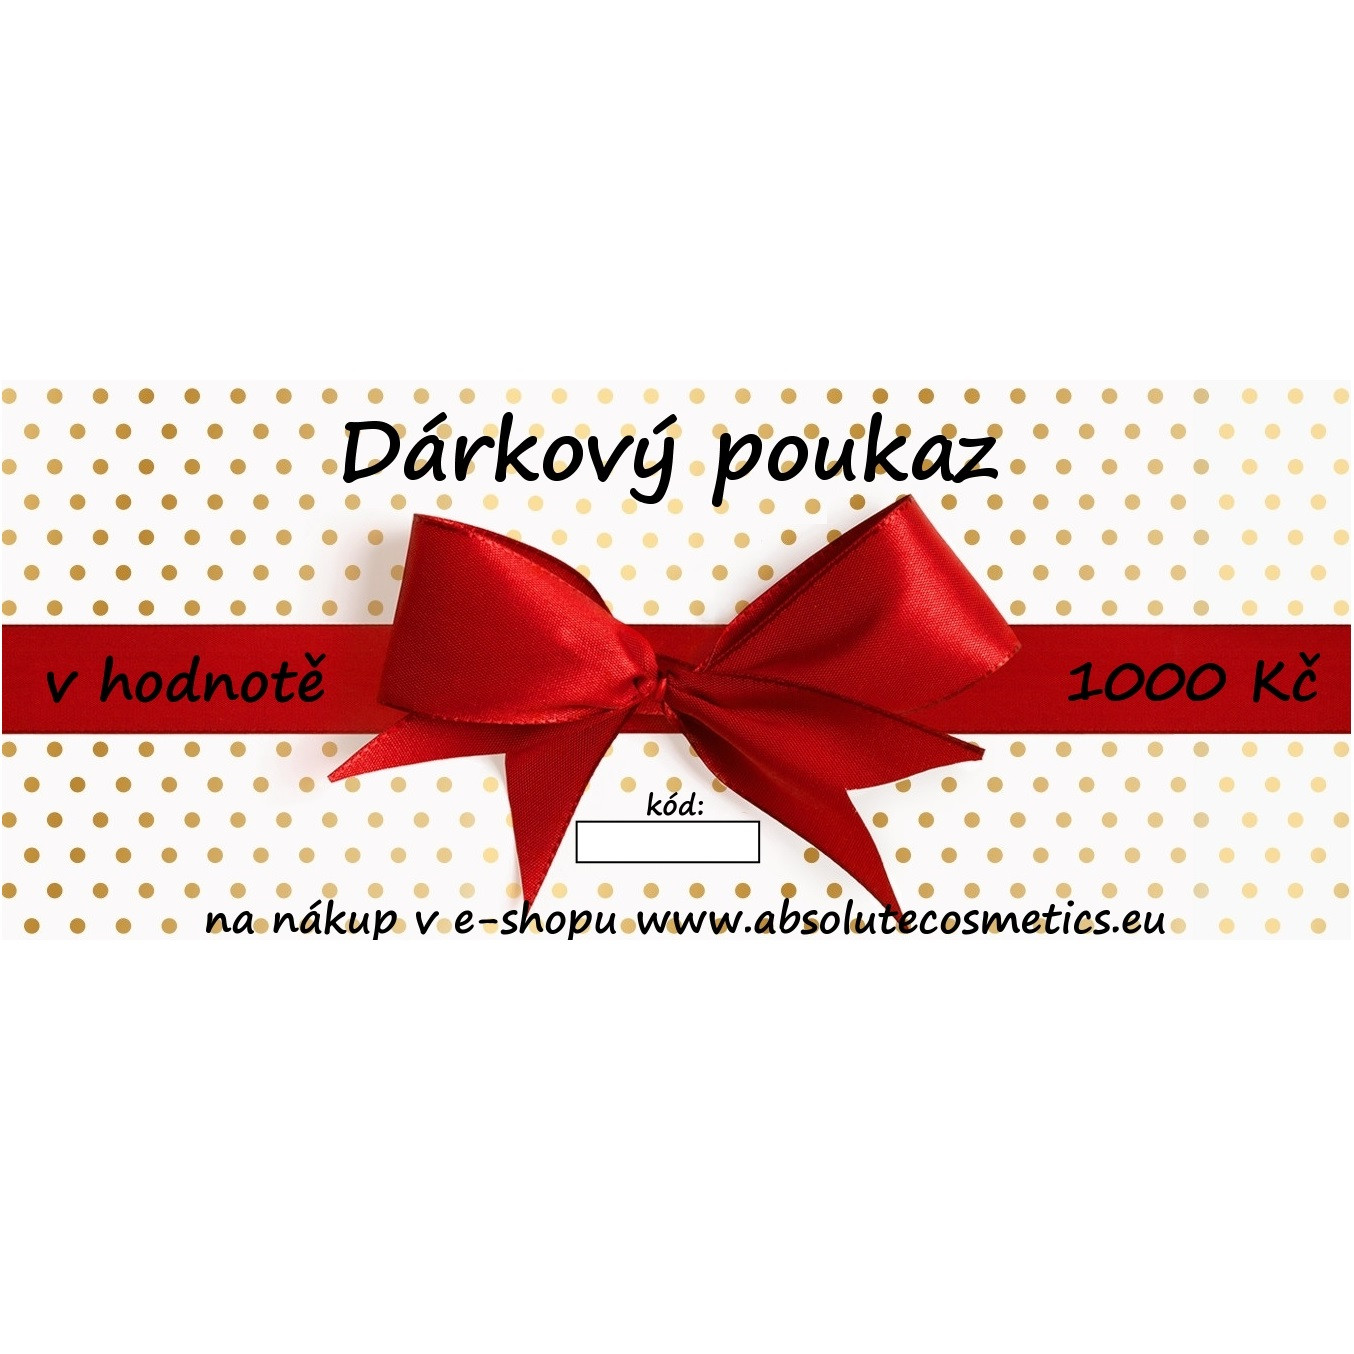 Darkovy Poukaz